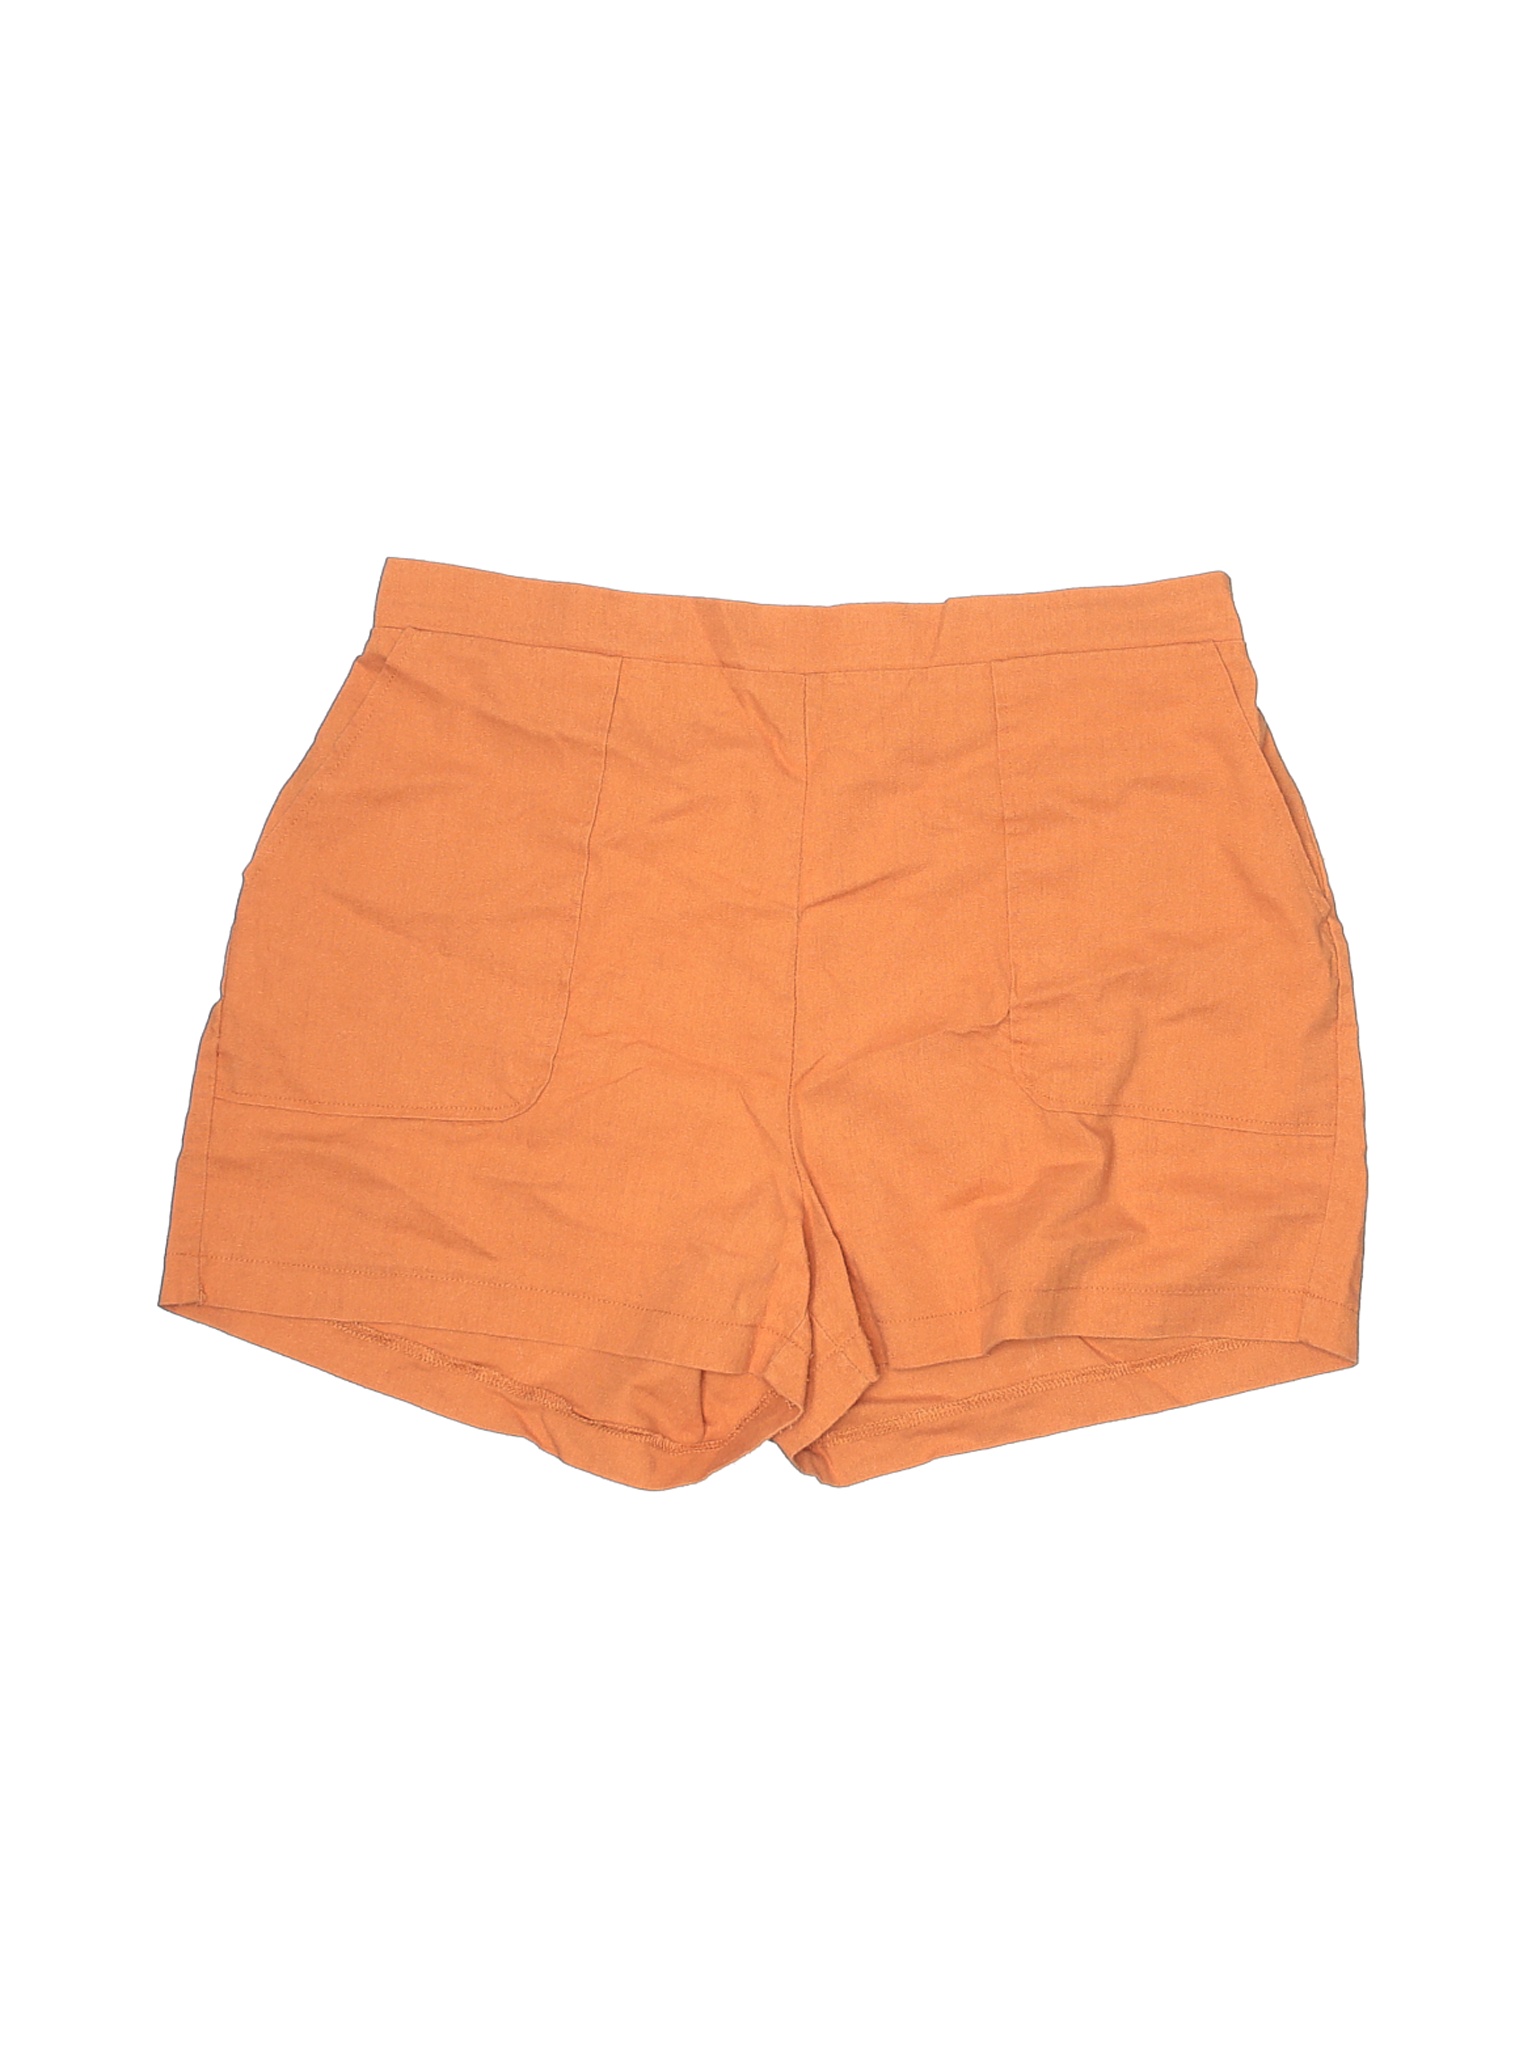 Shinestar Women Orange Shorts XL | eBay